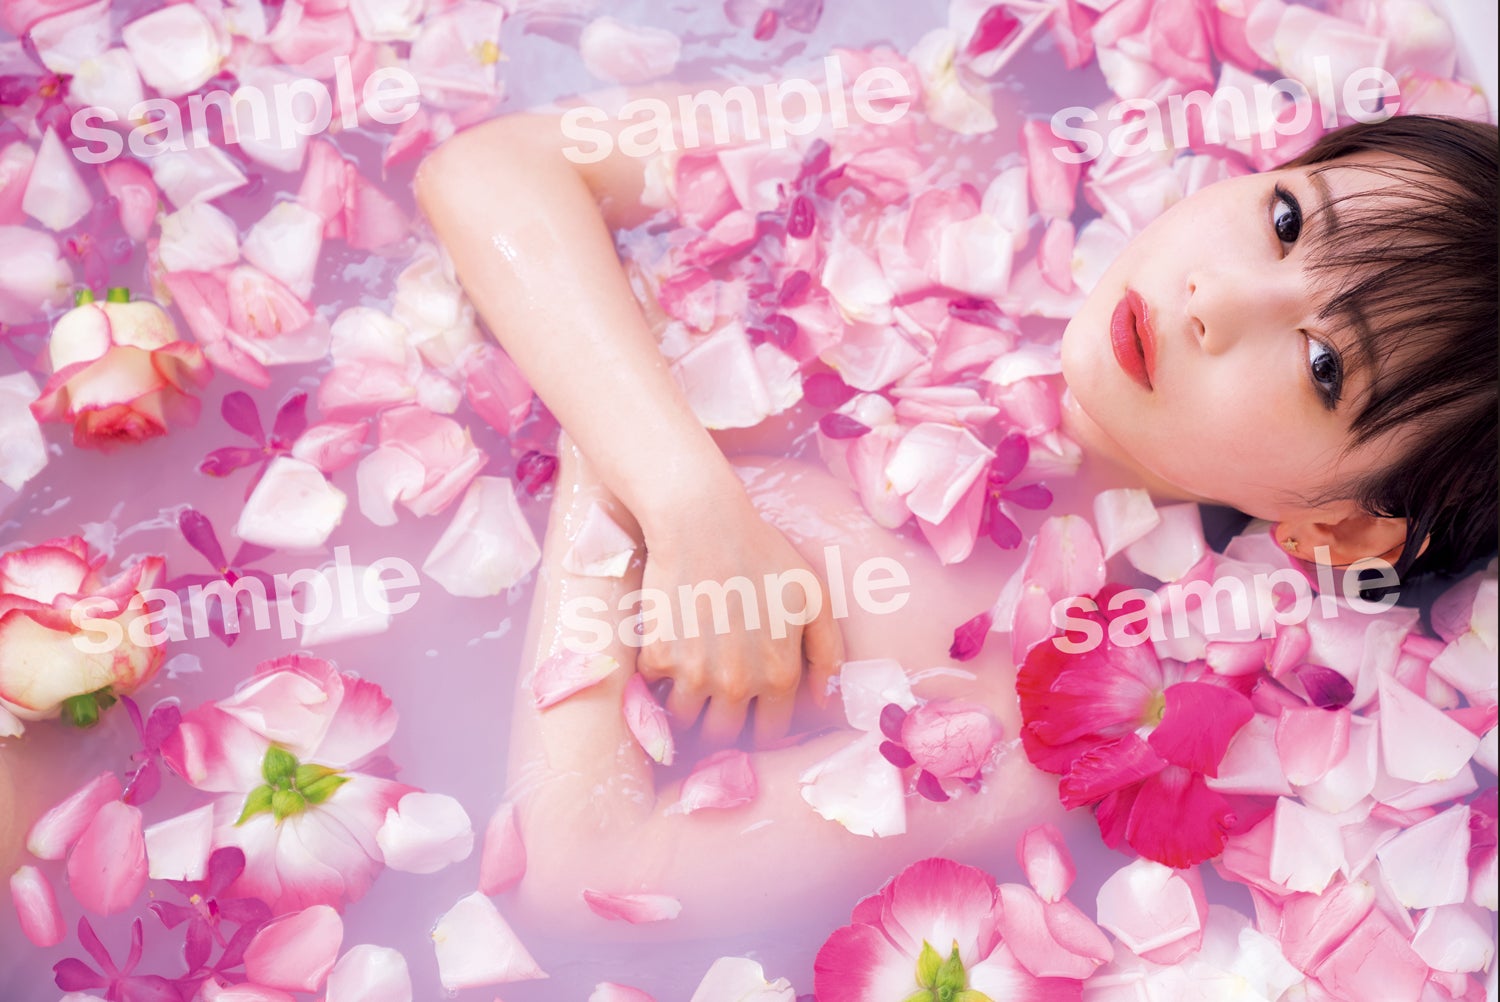 中川翔子、美バスト輝く白ビキニ姿披露 お風呂ショット含めたポストカード3種解禁＜ミラクルミライ＞ - モデルプレス